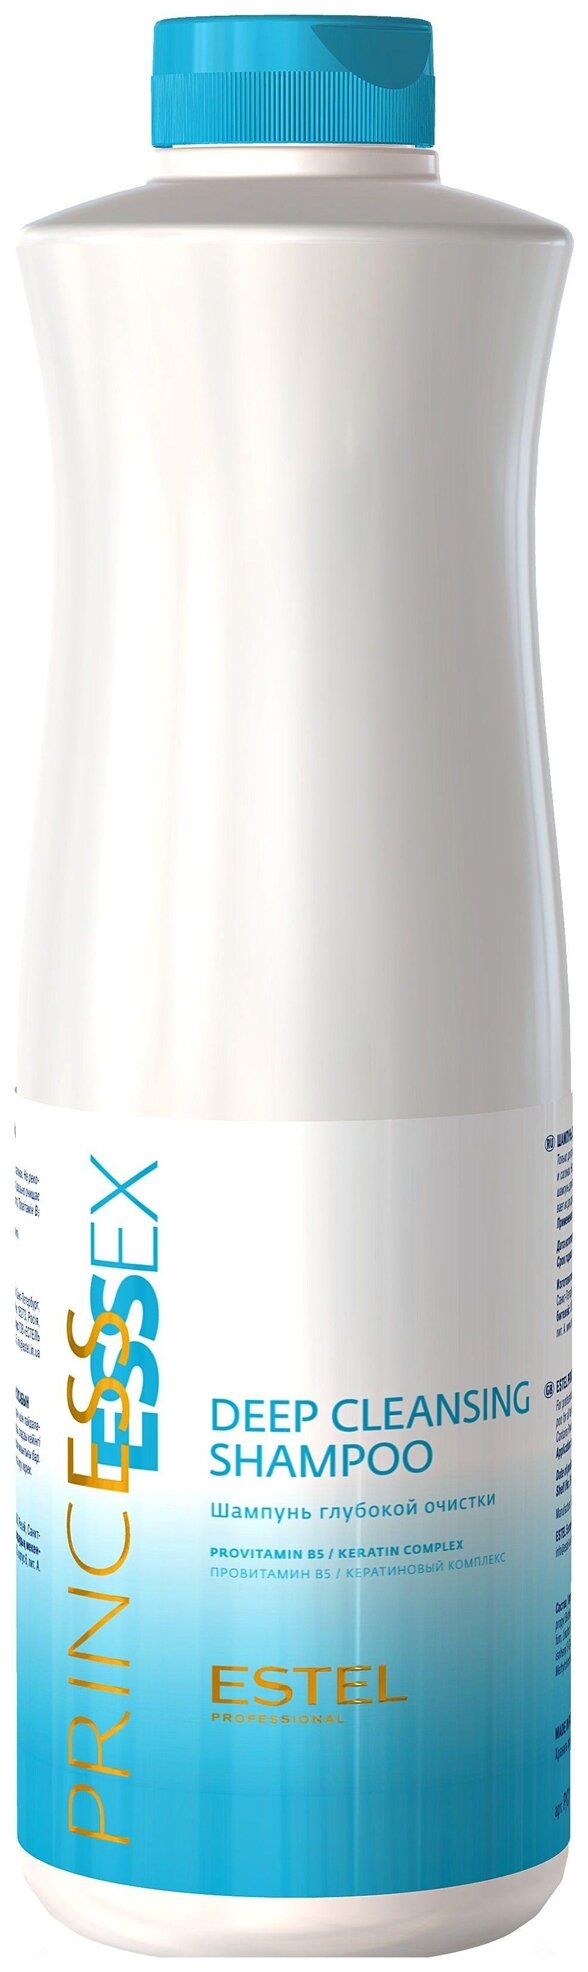 Estel Professional Essex Shampoo - Шампунь для волос глубокой очистки 1000 мл